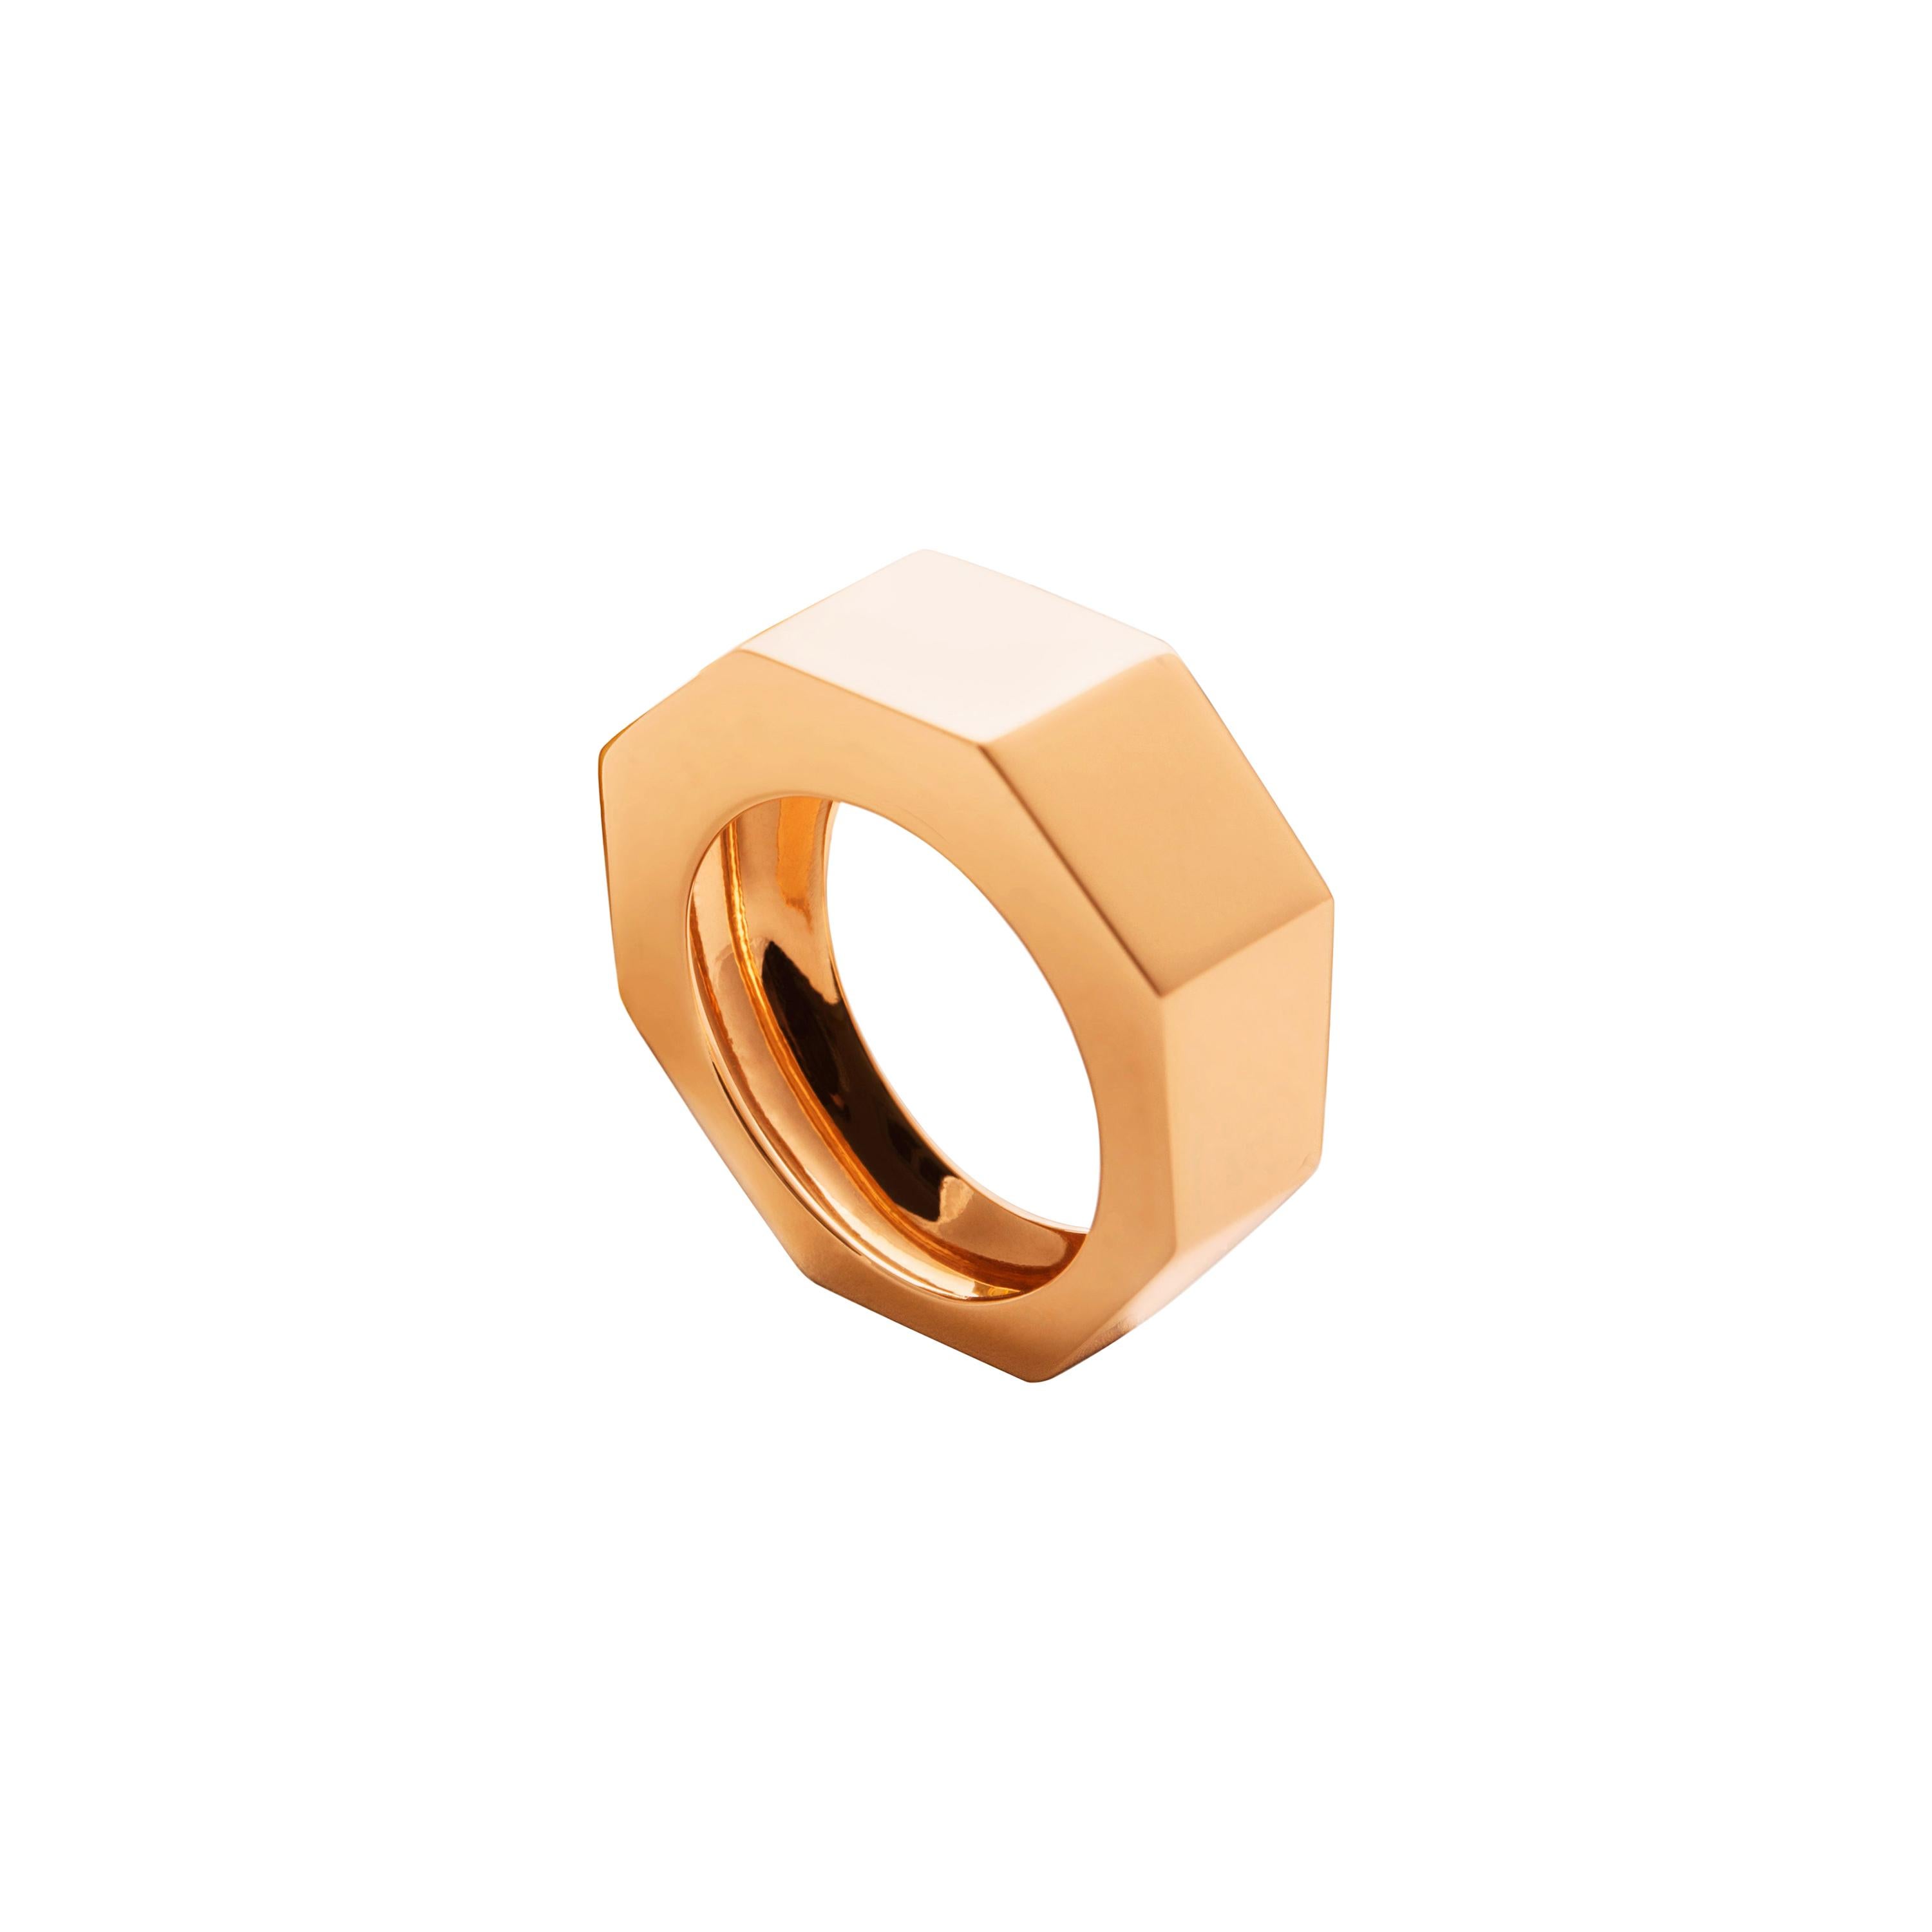 Art Deco Stil Anpassbarer Unisex-Ring aus 18 Karat Gelbgold mit modernem Design